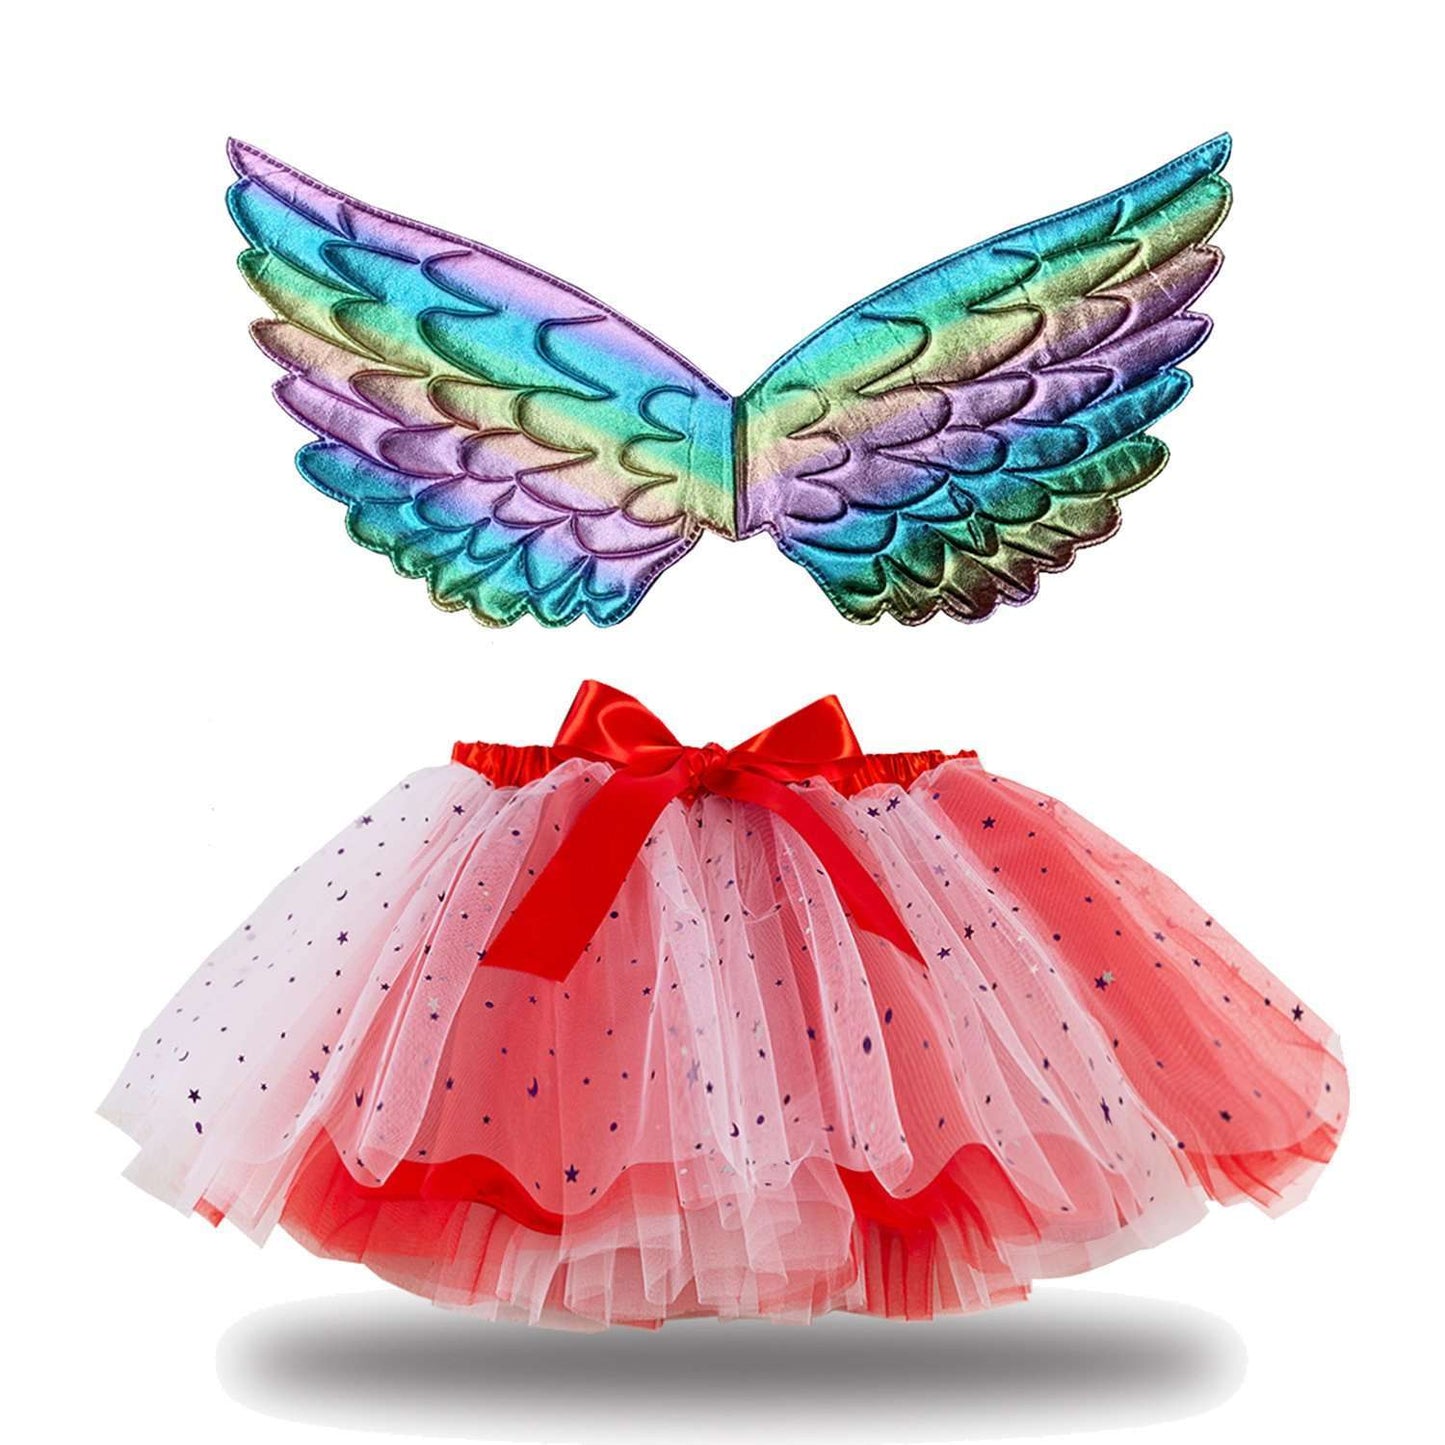 Send wings new girls skirt